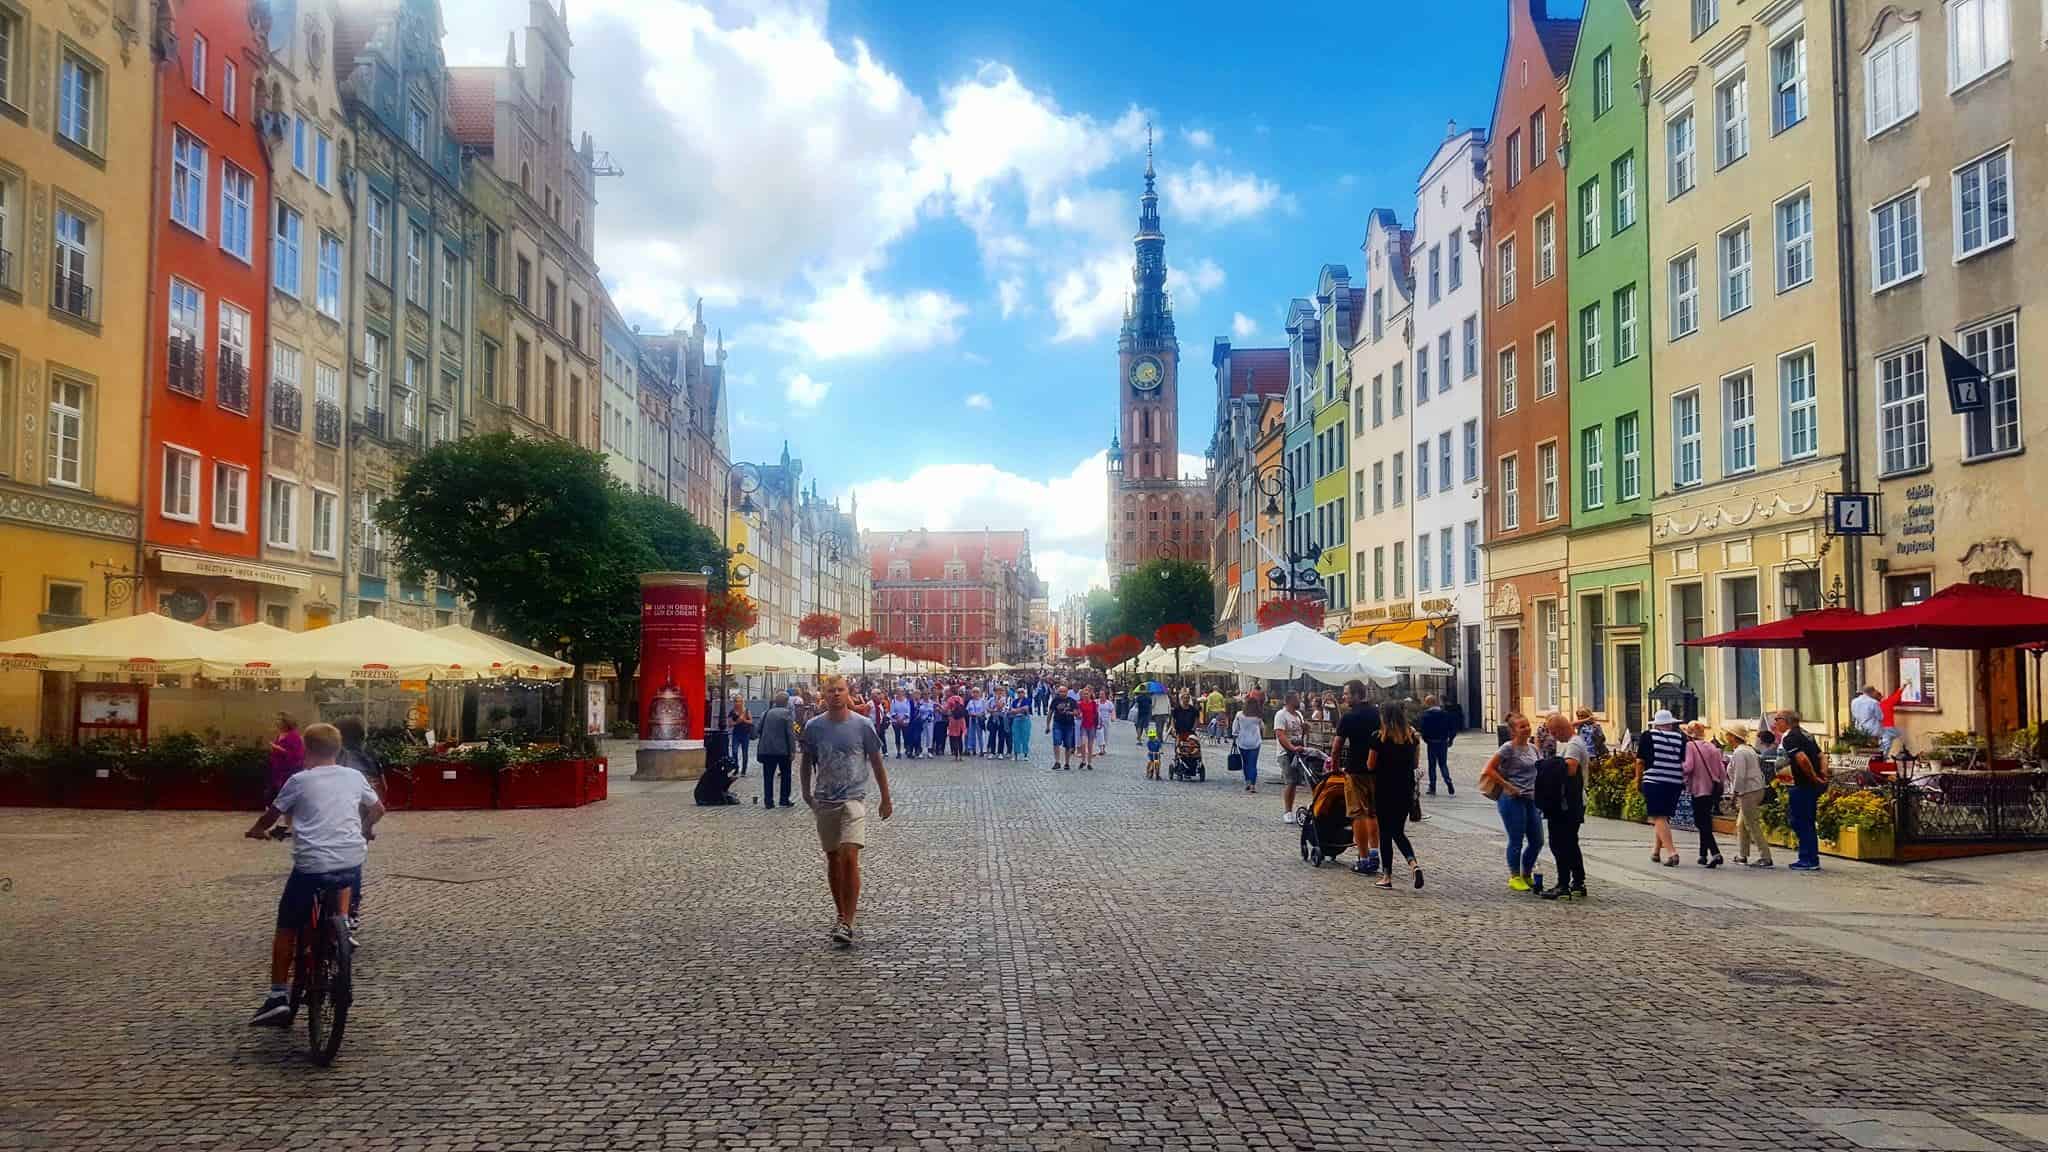 Gdańsk - Poland city center